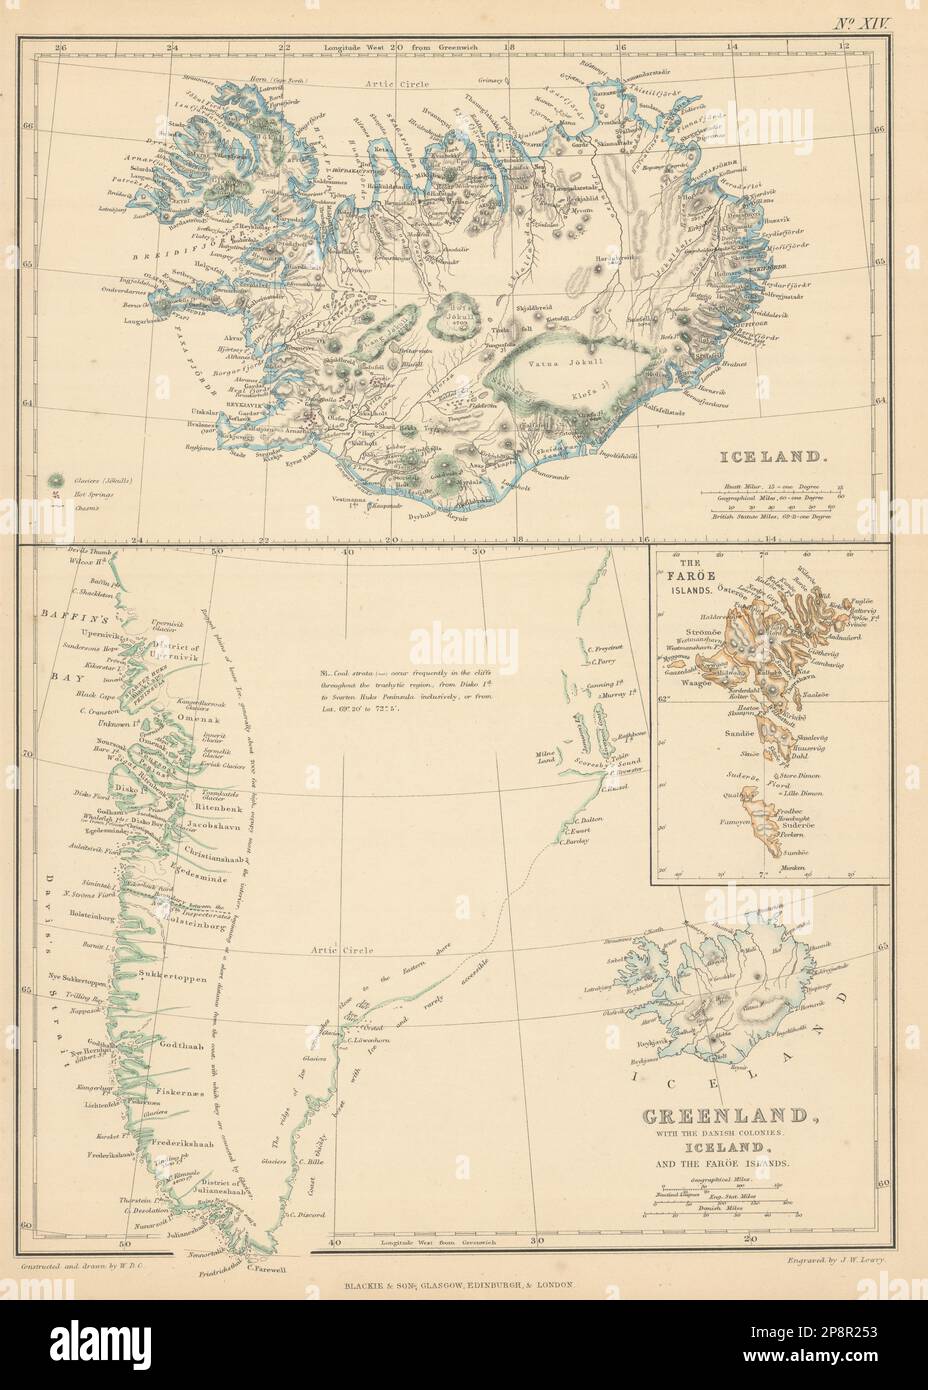 Iceland w/ glaciers. Greenland w/ Danish Colonies. Faroe Islands. LOWRY 1859 map Stock Photo